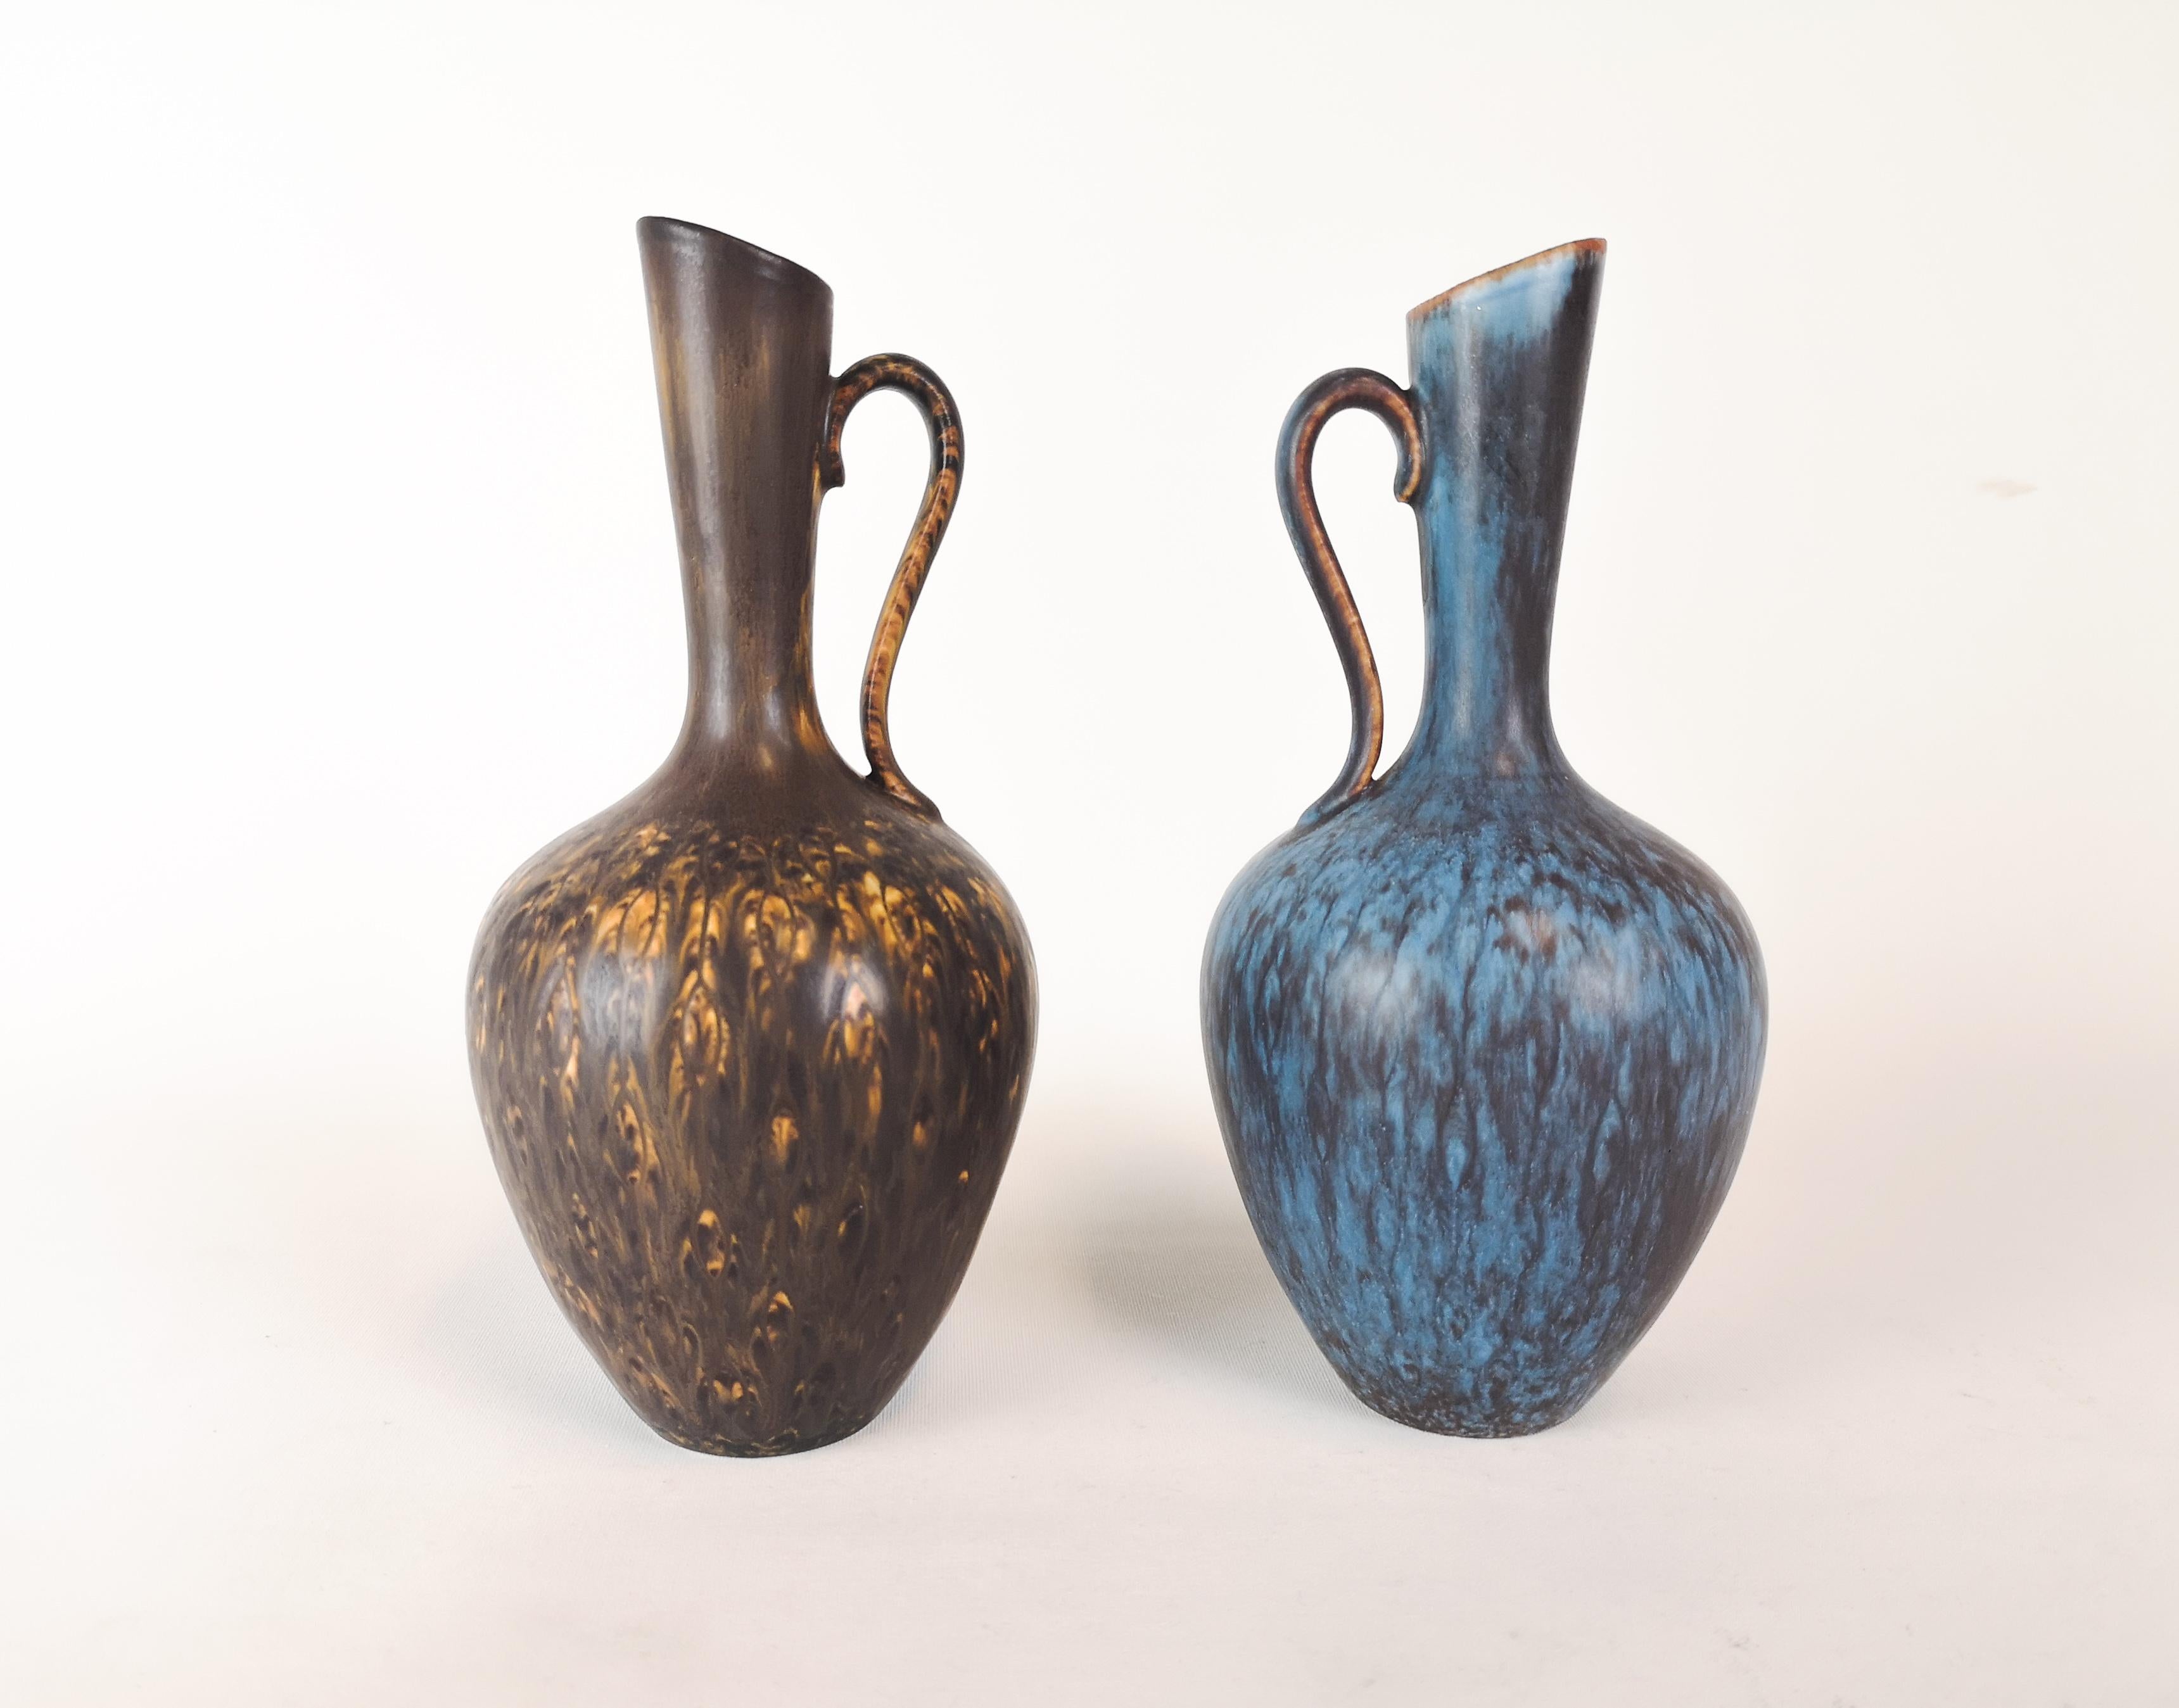 Zwei wunderschöne Vasen von Rörstrand und dem Hersteller/Designer Gunnar Nylund. Hergestellt in Schweden um die Mitte des Jahrhunderts. Schöne glasierte Vasen in gutem Zustand. 

Maße: H 23 x B 12 cm.